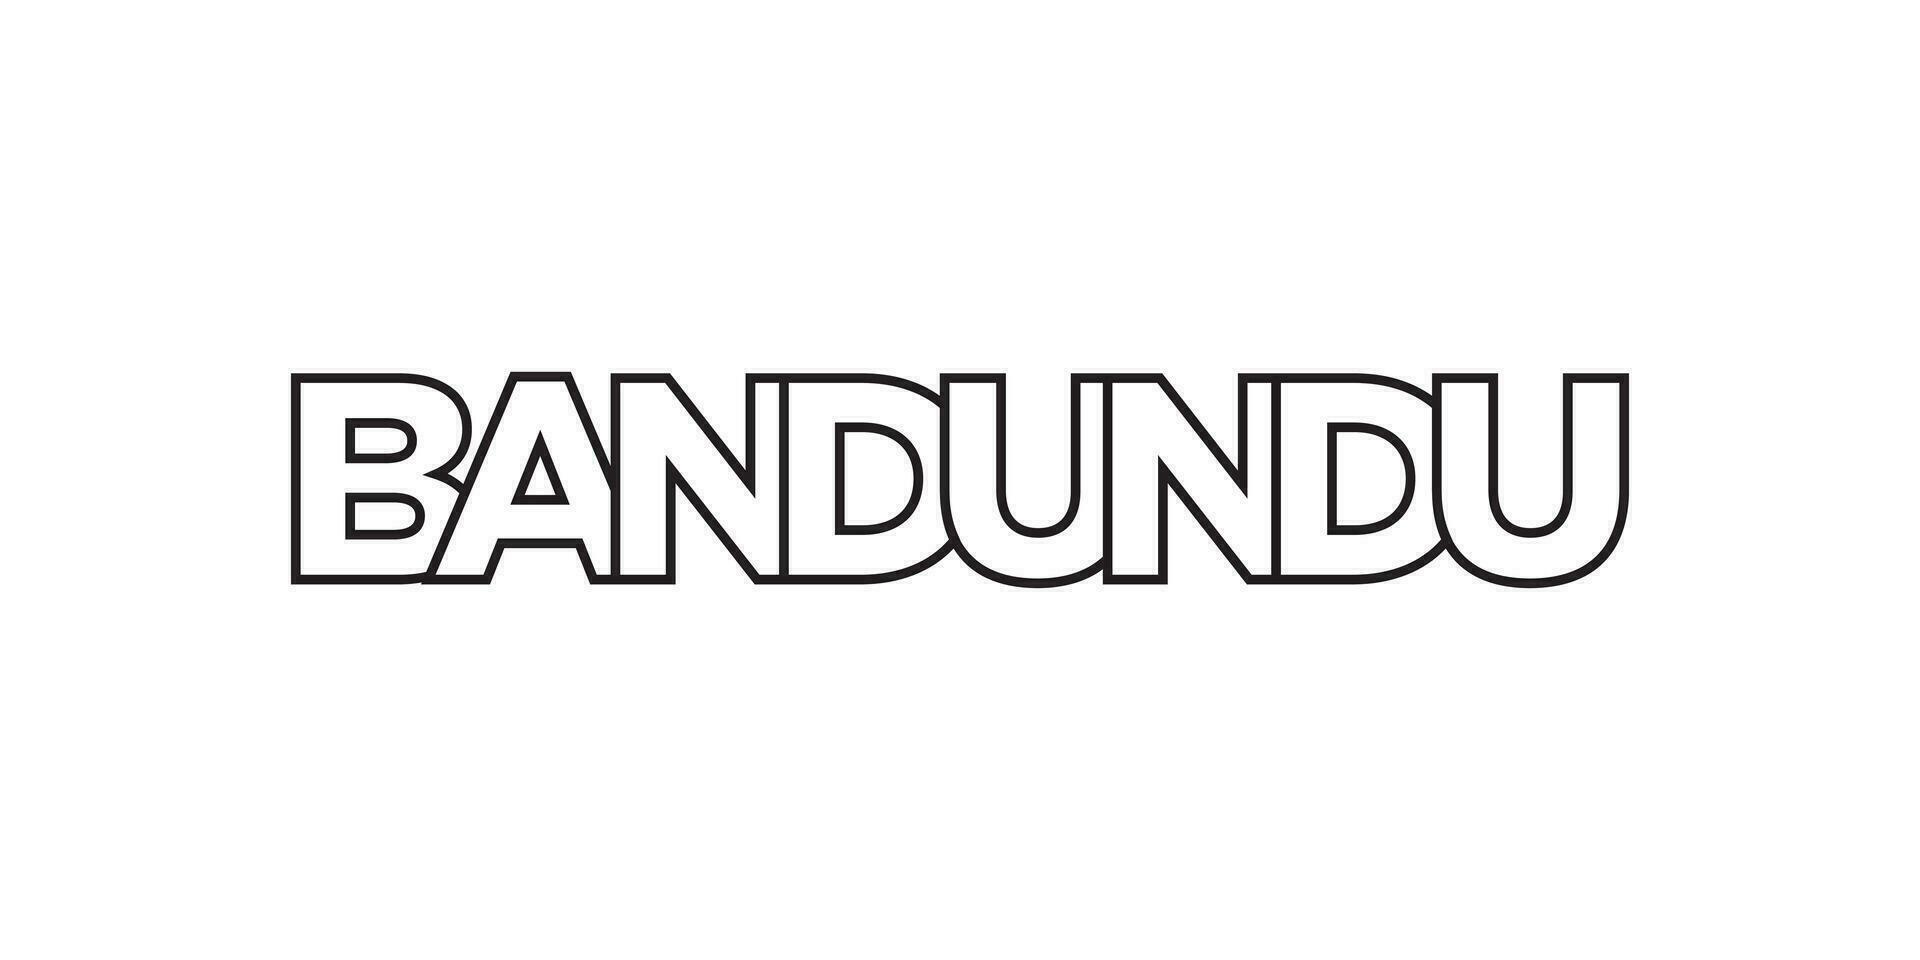 bandundu dentro a Congo emblema. a Projeto características uma geométrico estilo, vetor ilustração com negrito tipografia dentro uma moderno Fonte. a gráfico slogan rotulação.